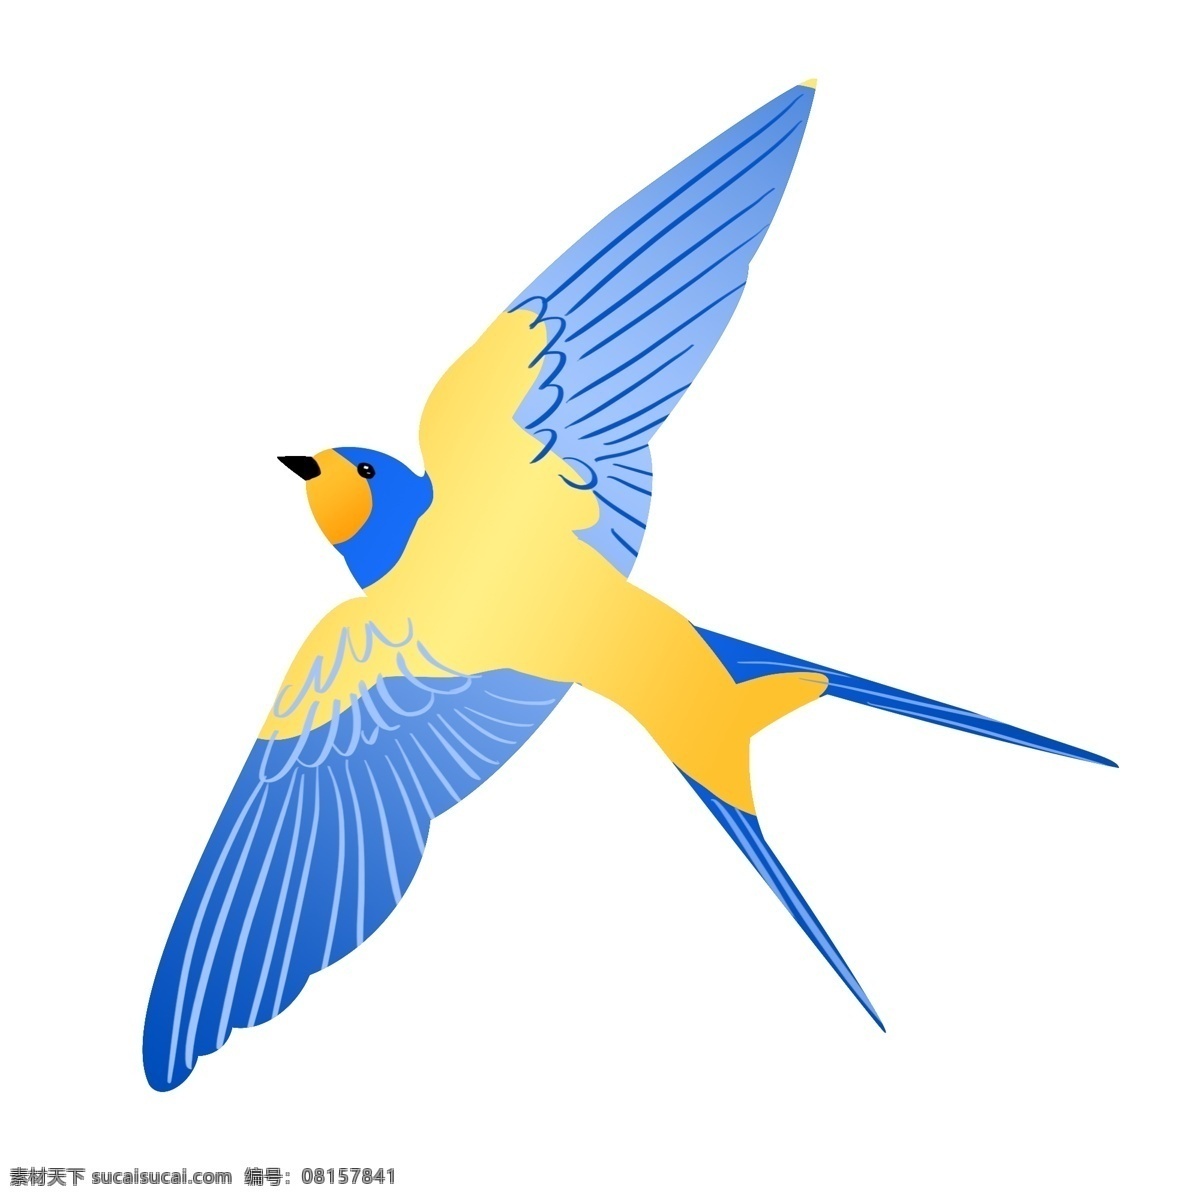 蓝色 飞翔 燕子 插画 展开的翅膀 鸟 动物 手绘燕子 春季 漂亮的燕子 飞燕插画 蓝色燕子 煽动的翅膀